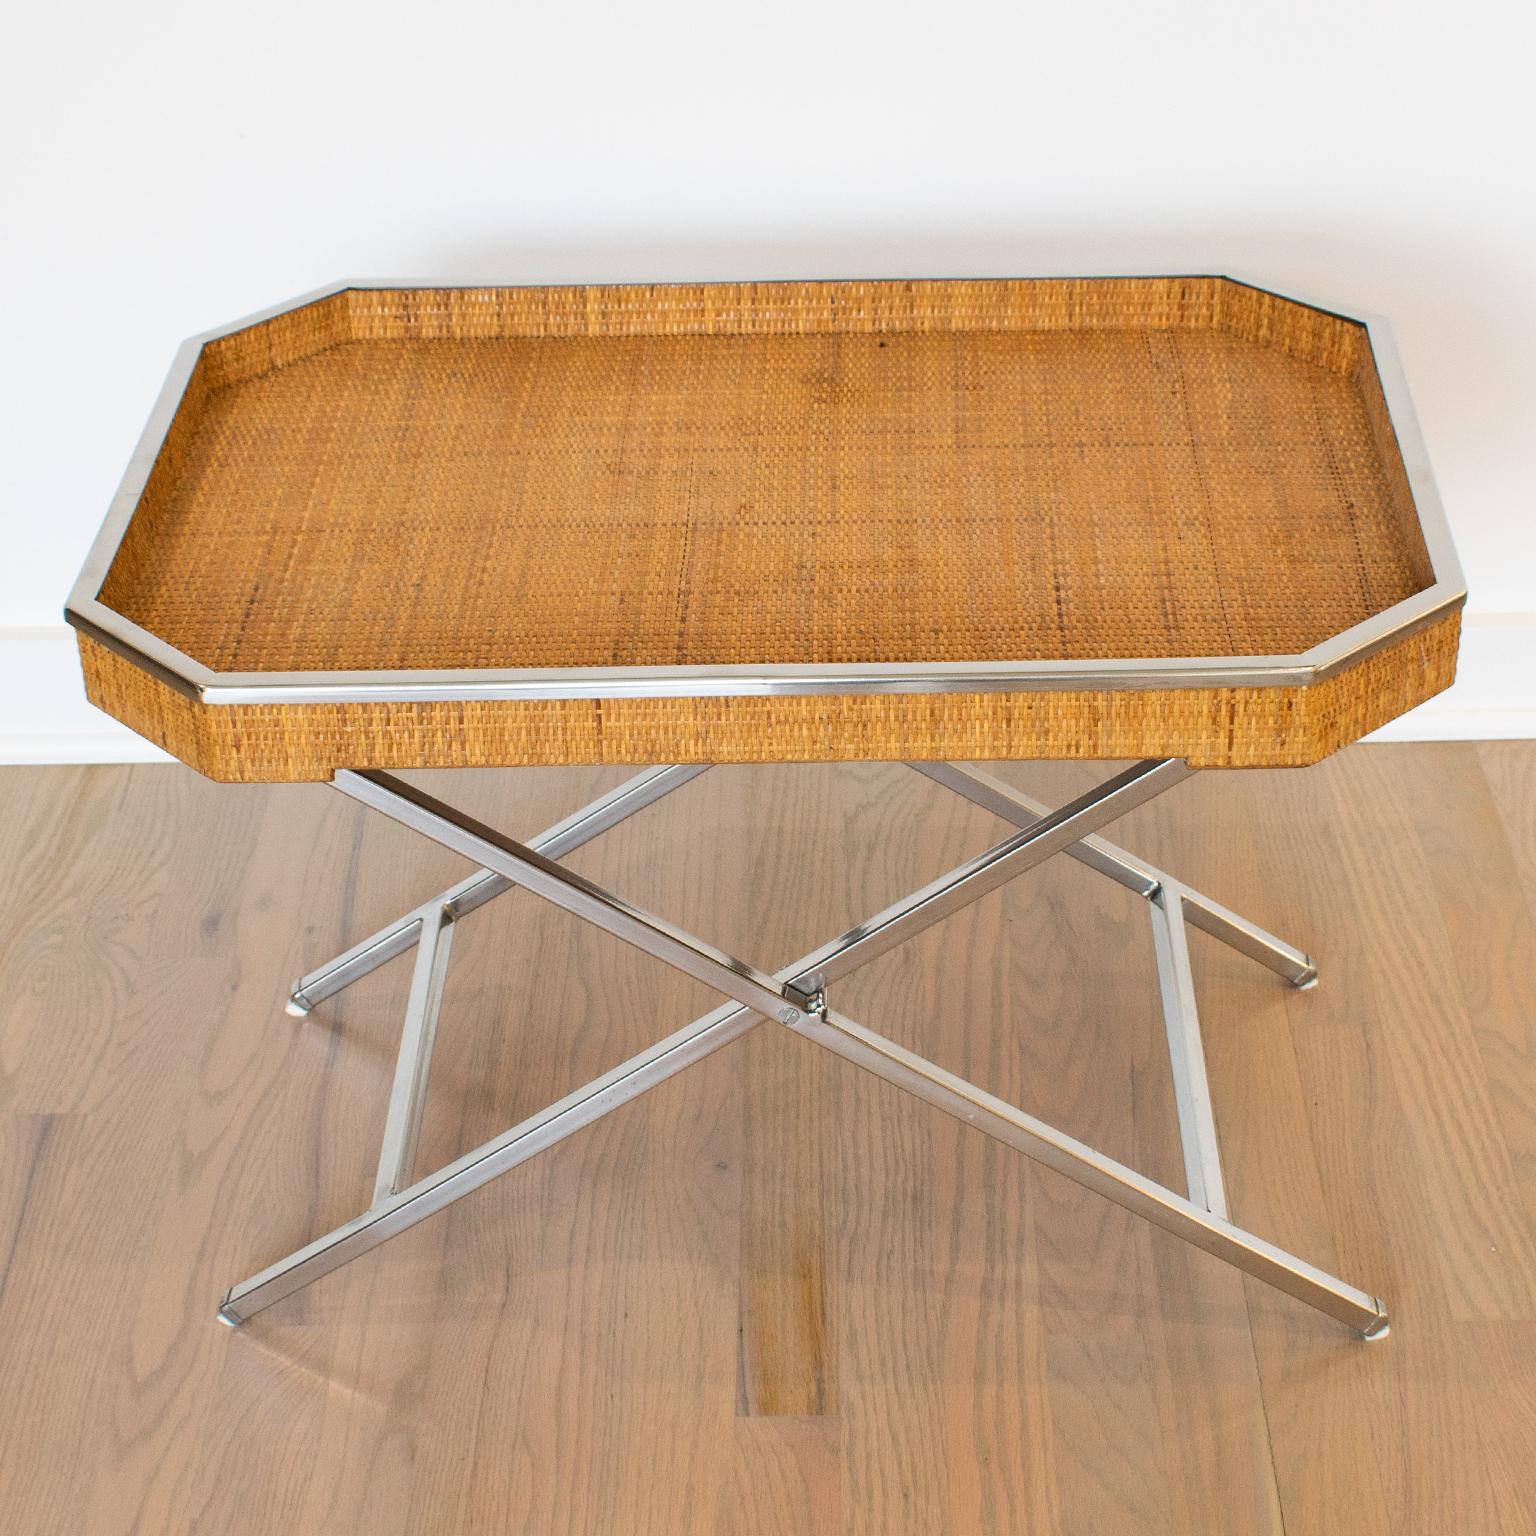 Tommaso Barbi ha disegnato questo elegante tavolino pieghevole da bar negli anni '70 in Italia. La forma rettangolare del maggiordomo vanta una galleria rialzata in metallo cromato e una vera canna di rattan o vimini. Il tavolo è dotato di un